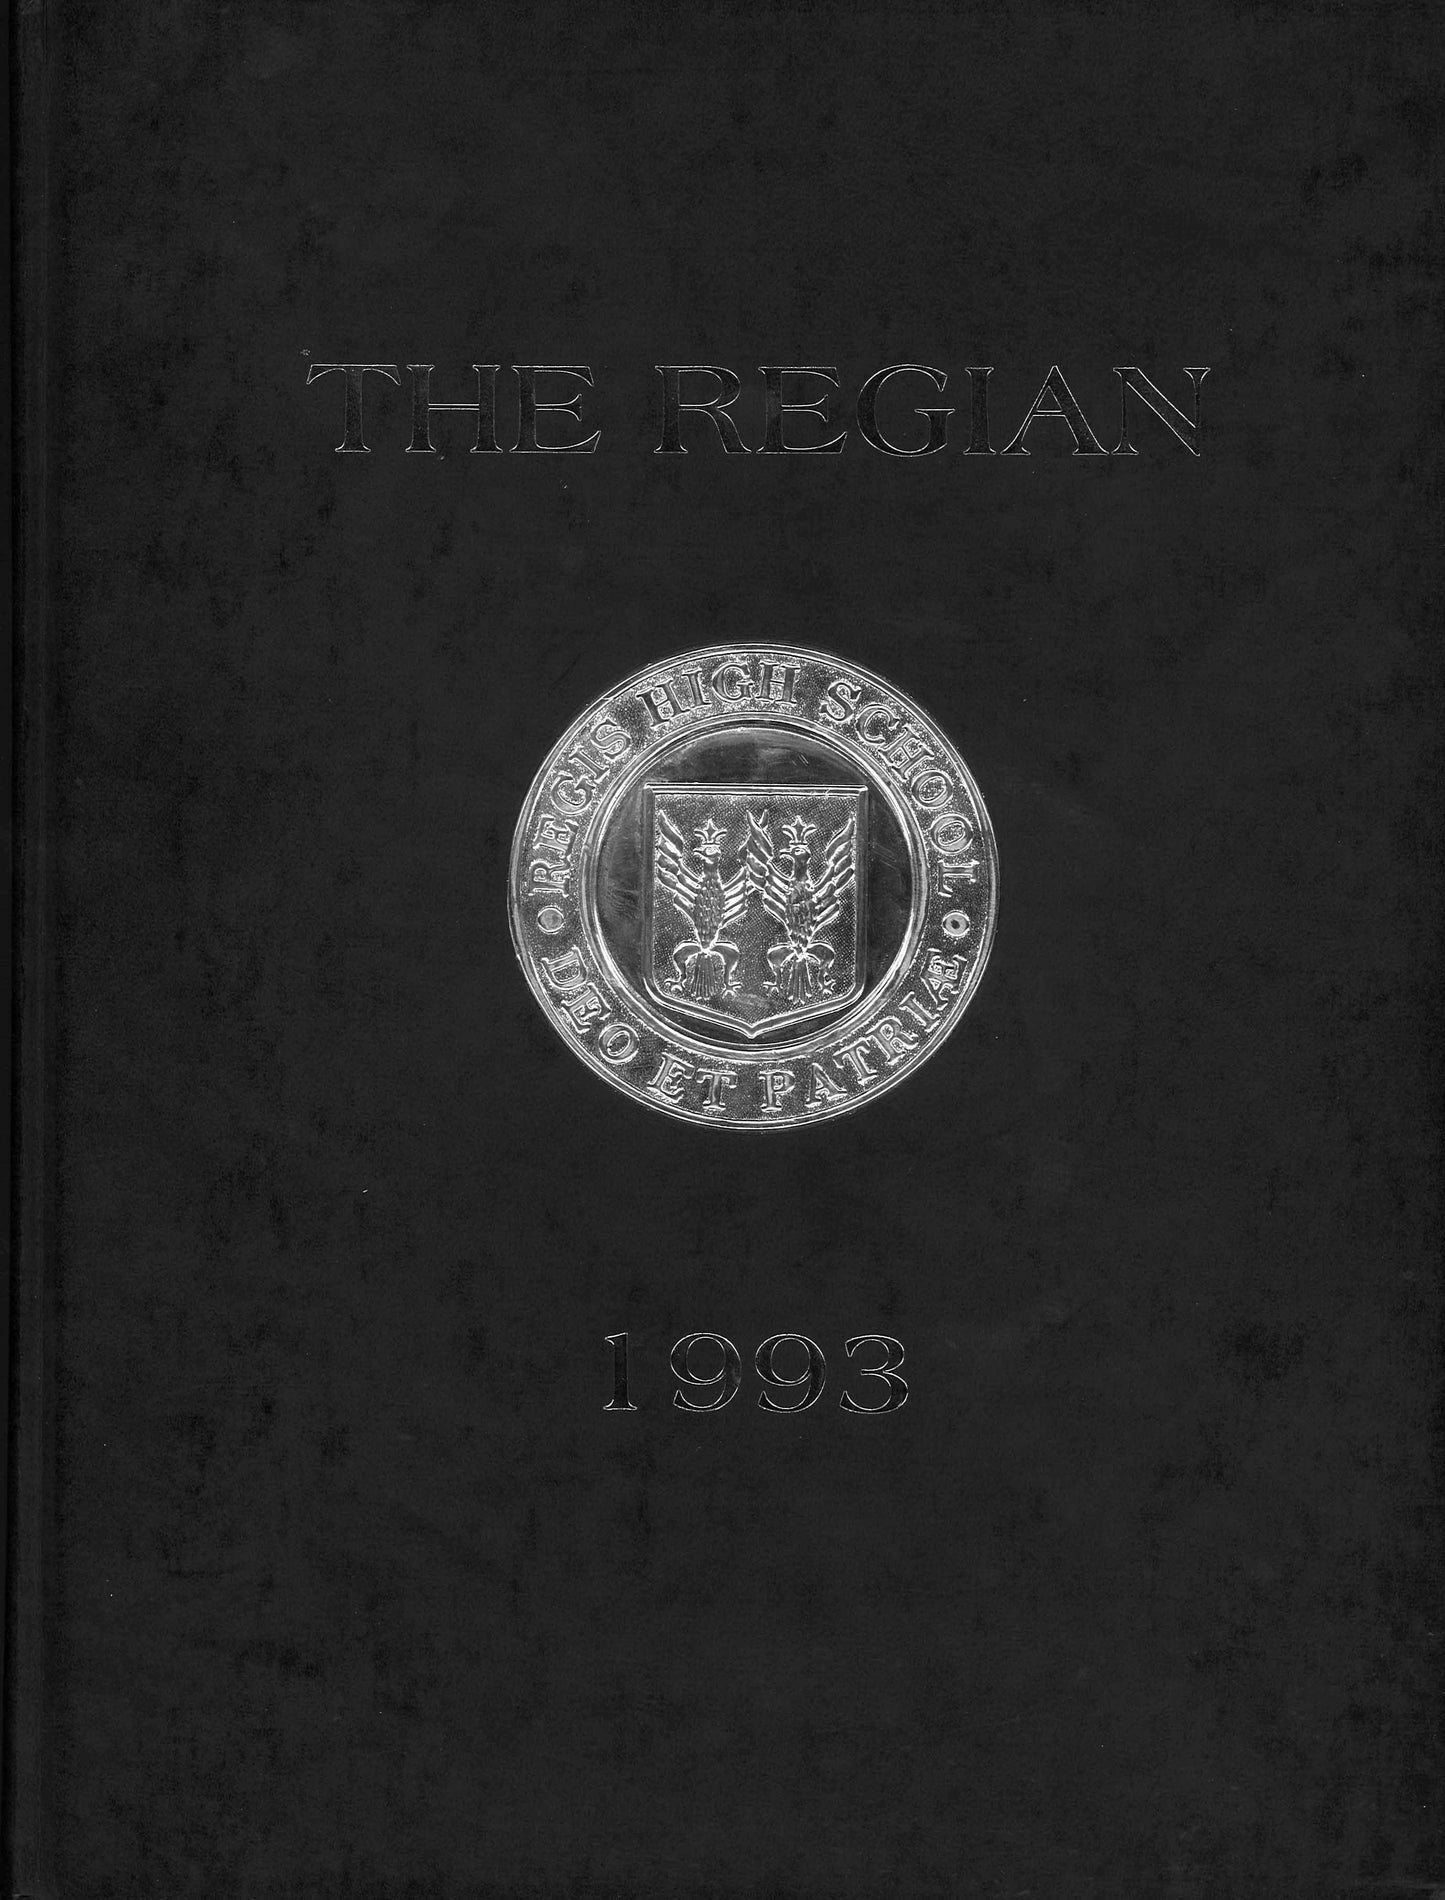 The Regian - 1993